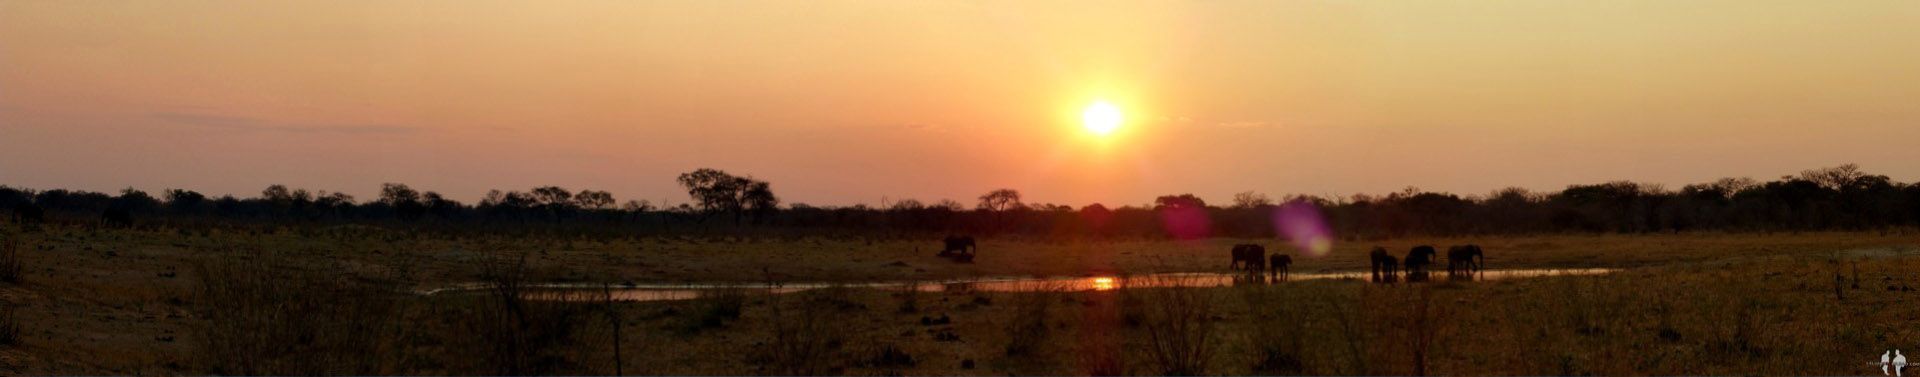 DIARIO: Un mes por el AFRICA AUSTRAL por libre Pano, Elefantes, Puesta de sol, Lago, Parque Hwange, Zimbabwe